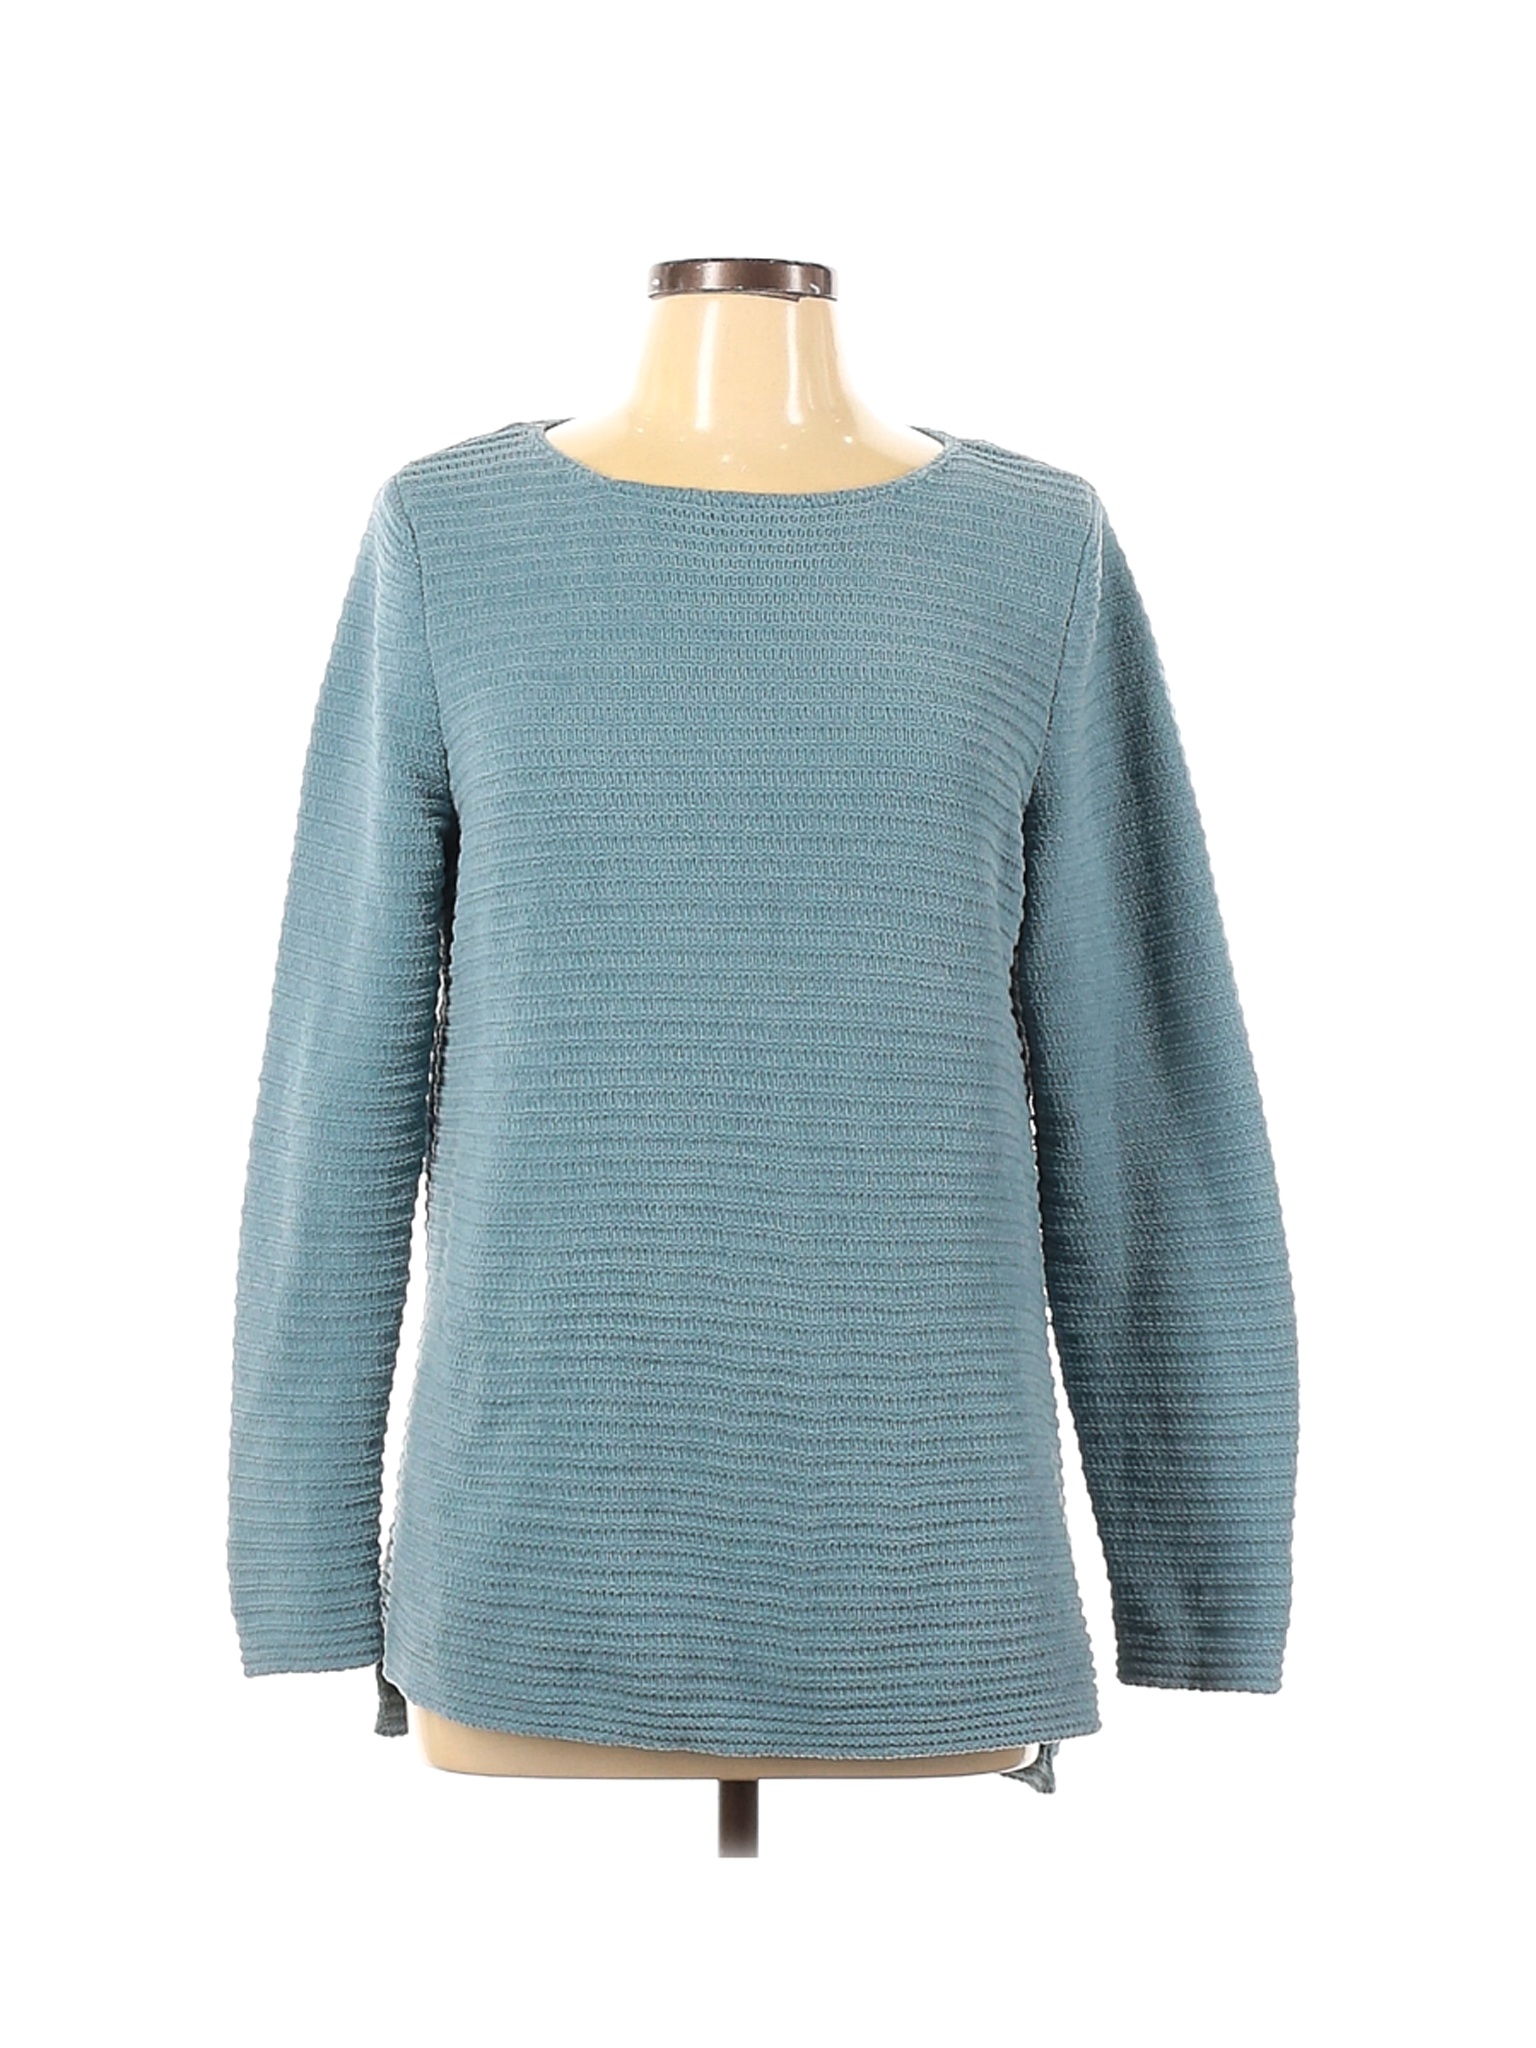 J.Jill Women Green Pullover Sweater M | eBay